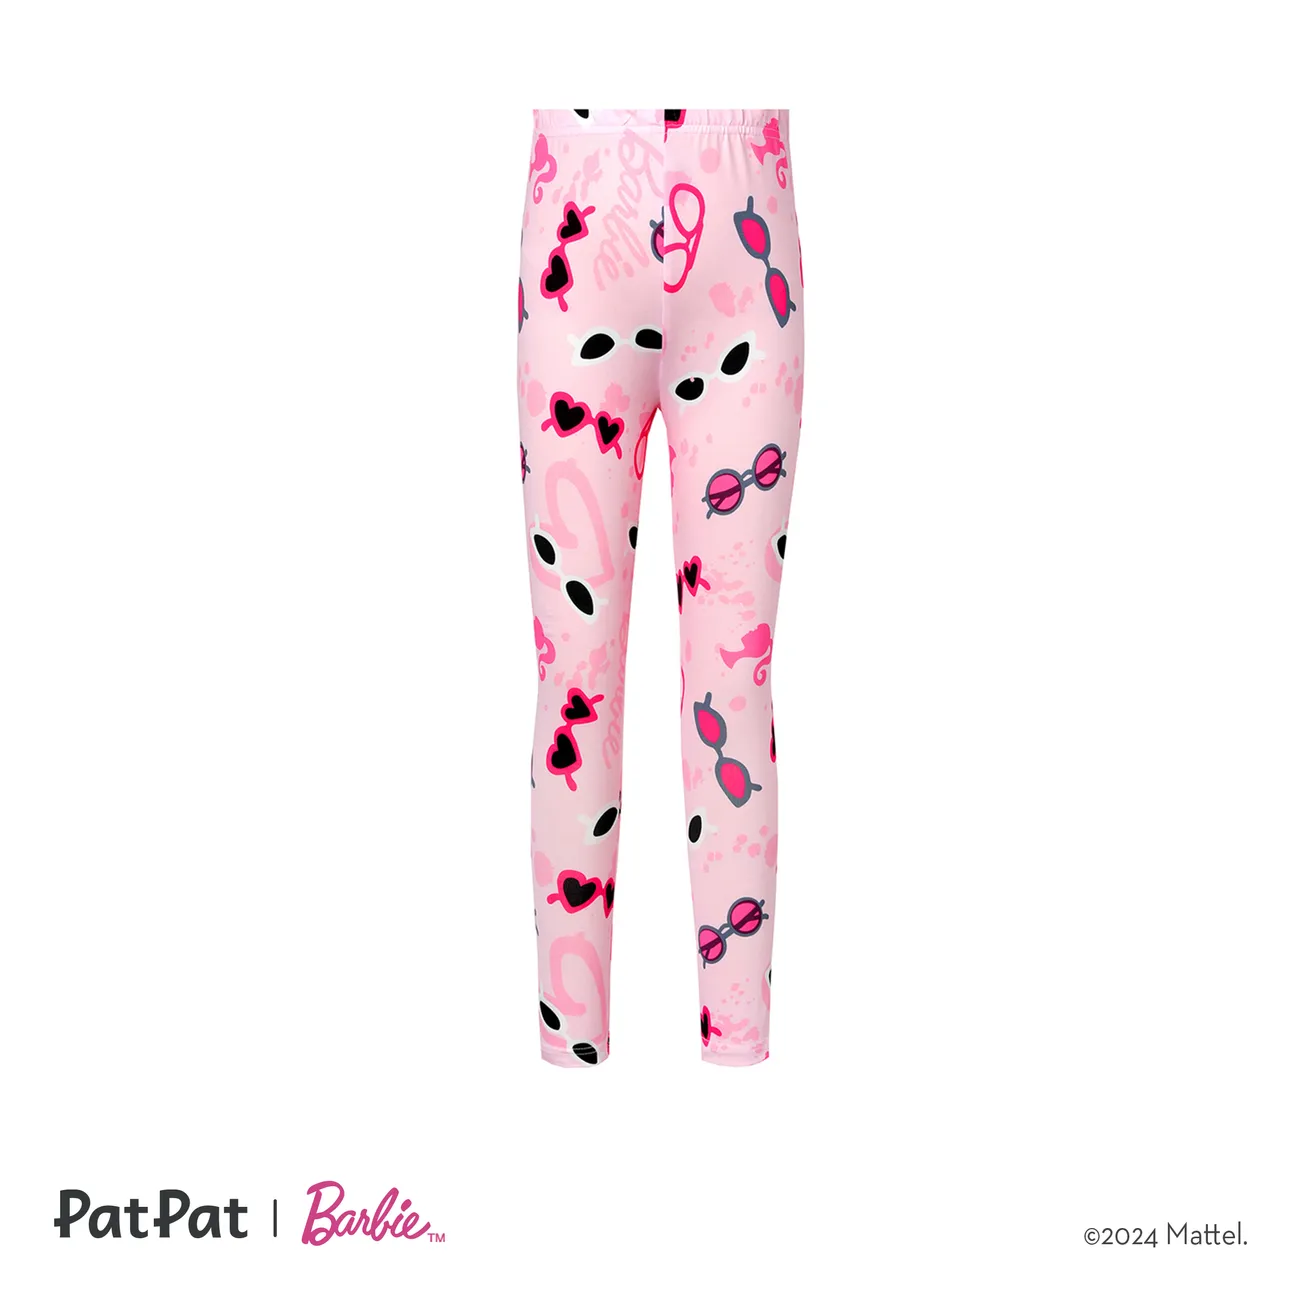 Barbie Kid Girl Letter/Glasses Print/Houndstooth Elasticized Leggings  Pink big image 1